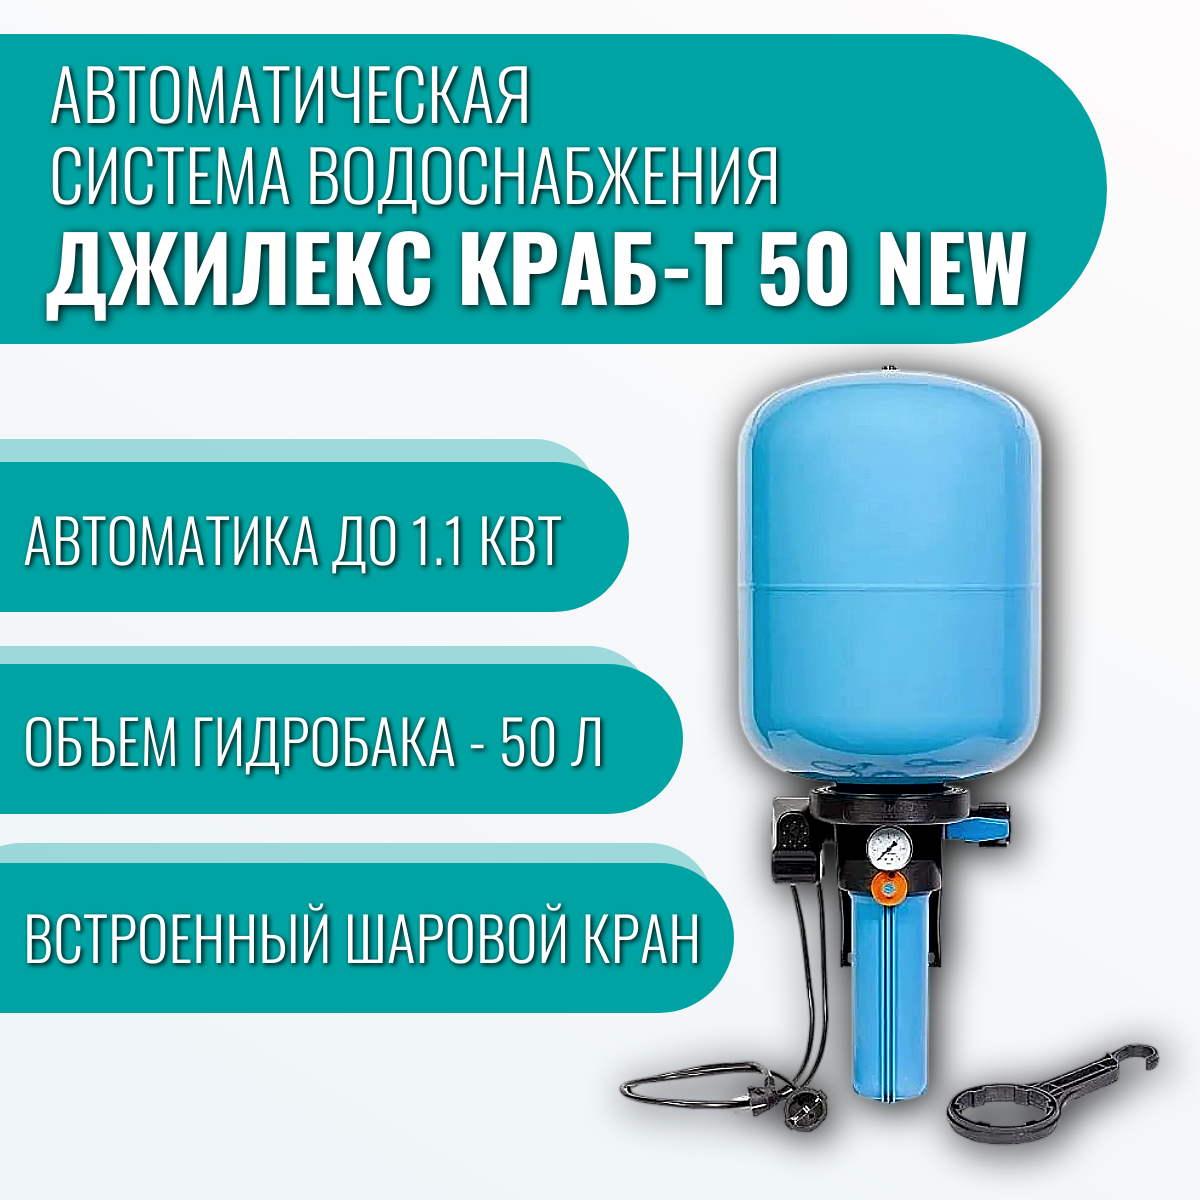 Автоматическая система водоснабжения Джилекс краб-т 50 new